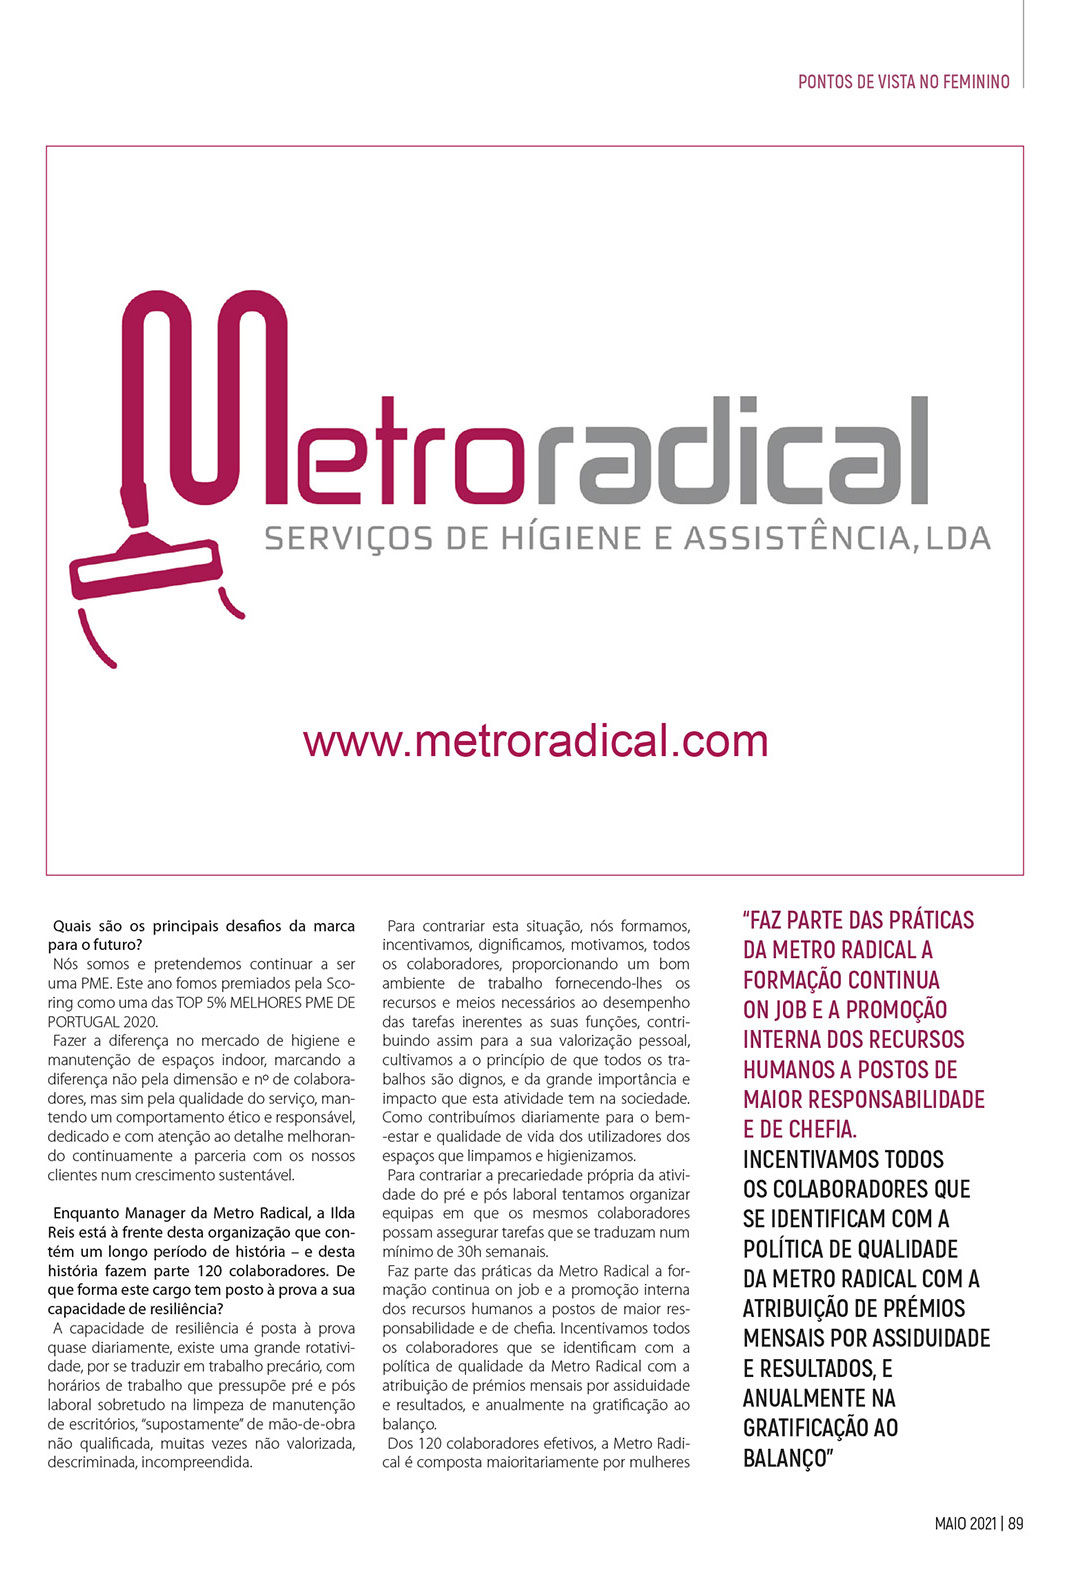 Press Release Metro Radical – Pontos de Vista – PG2